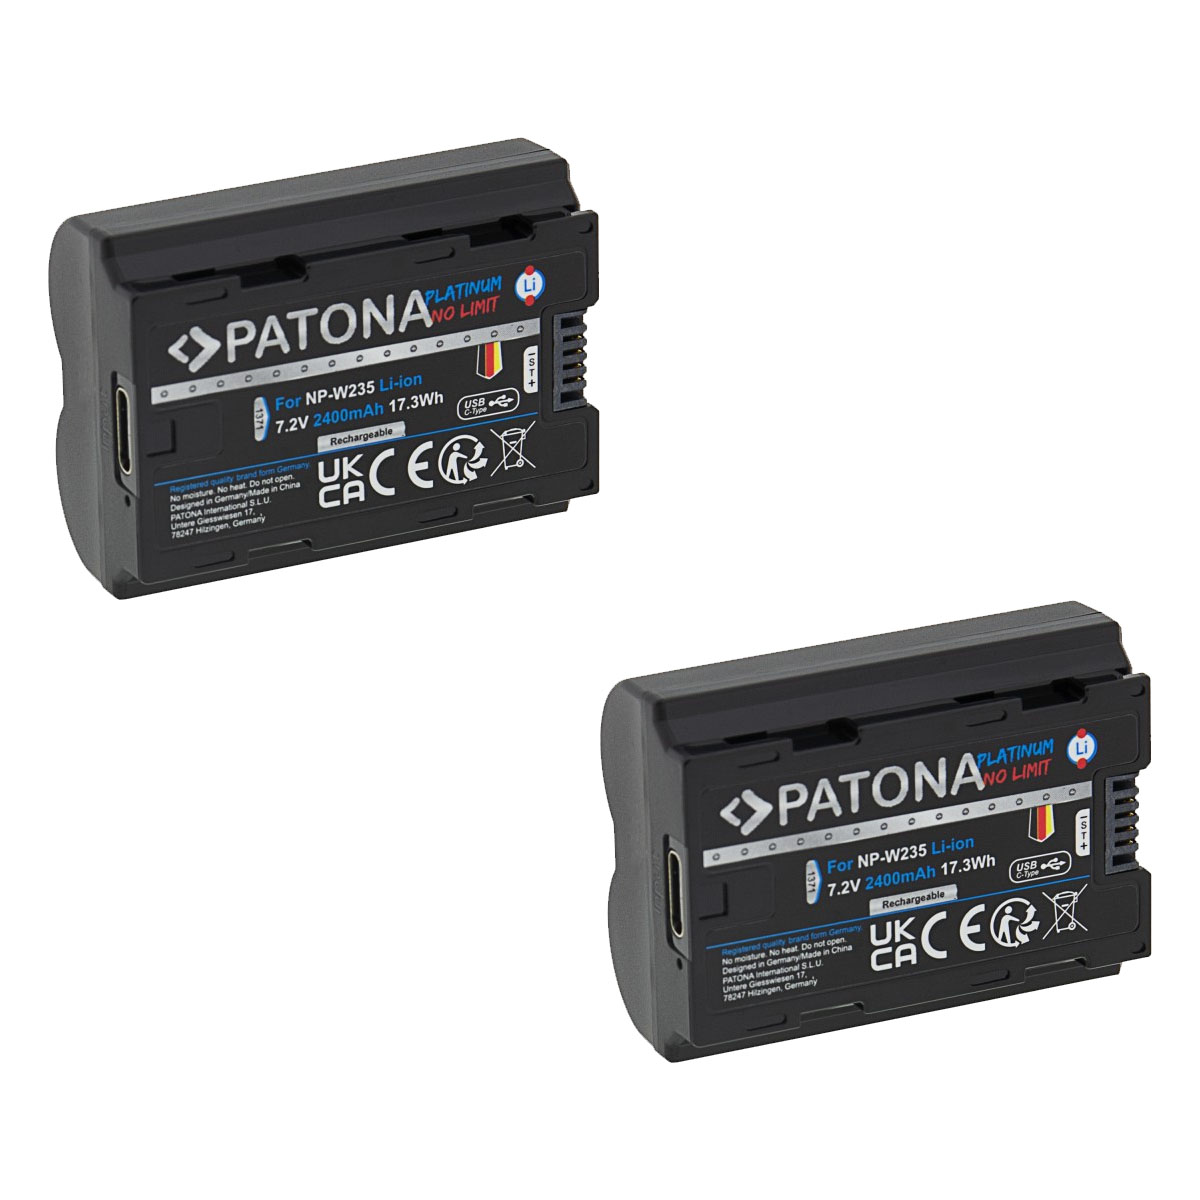 Patona Platinum Akku Doppelpack mit USB-C Input Fuji FinePix NP-W235